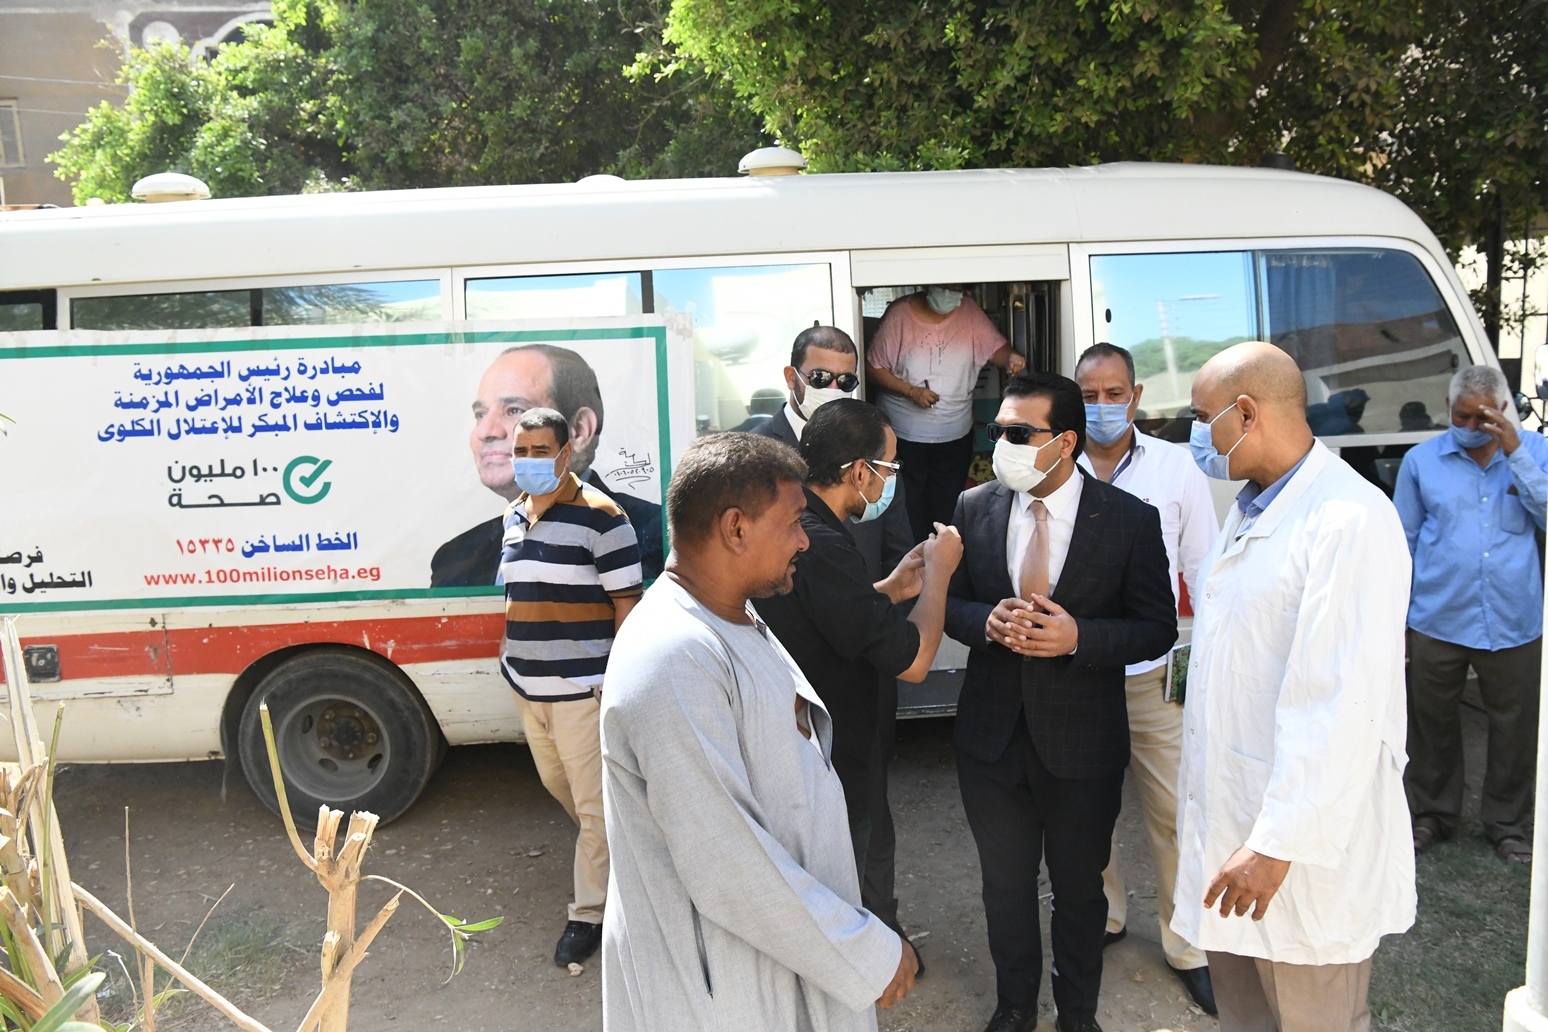   محافظة قنا تتابع أعمال القافلة الطبية المجانية بنجع حمادي